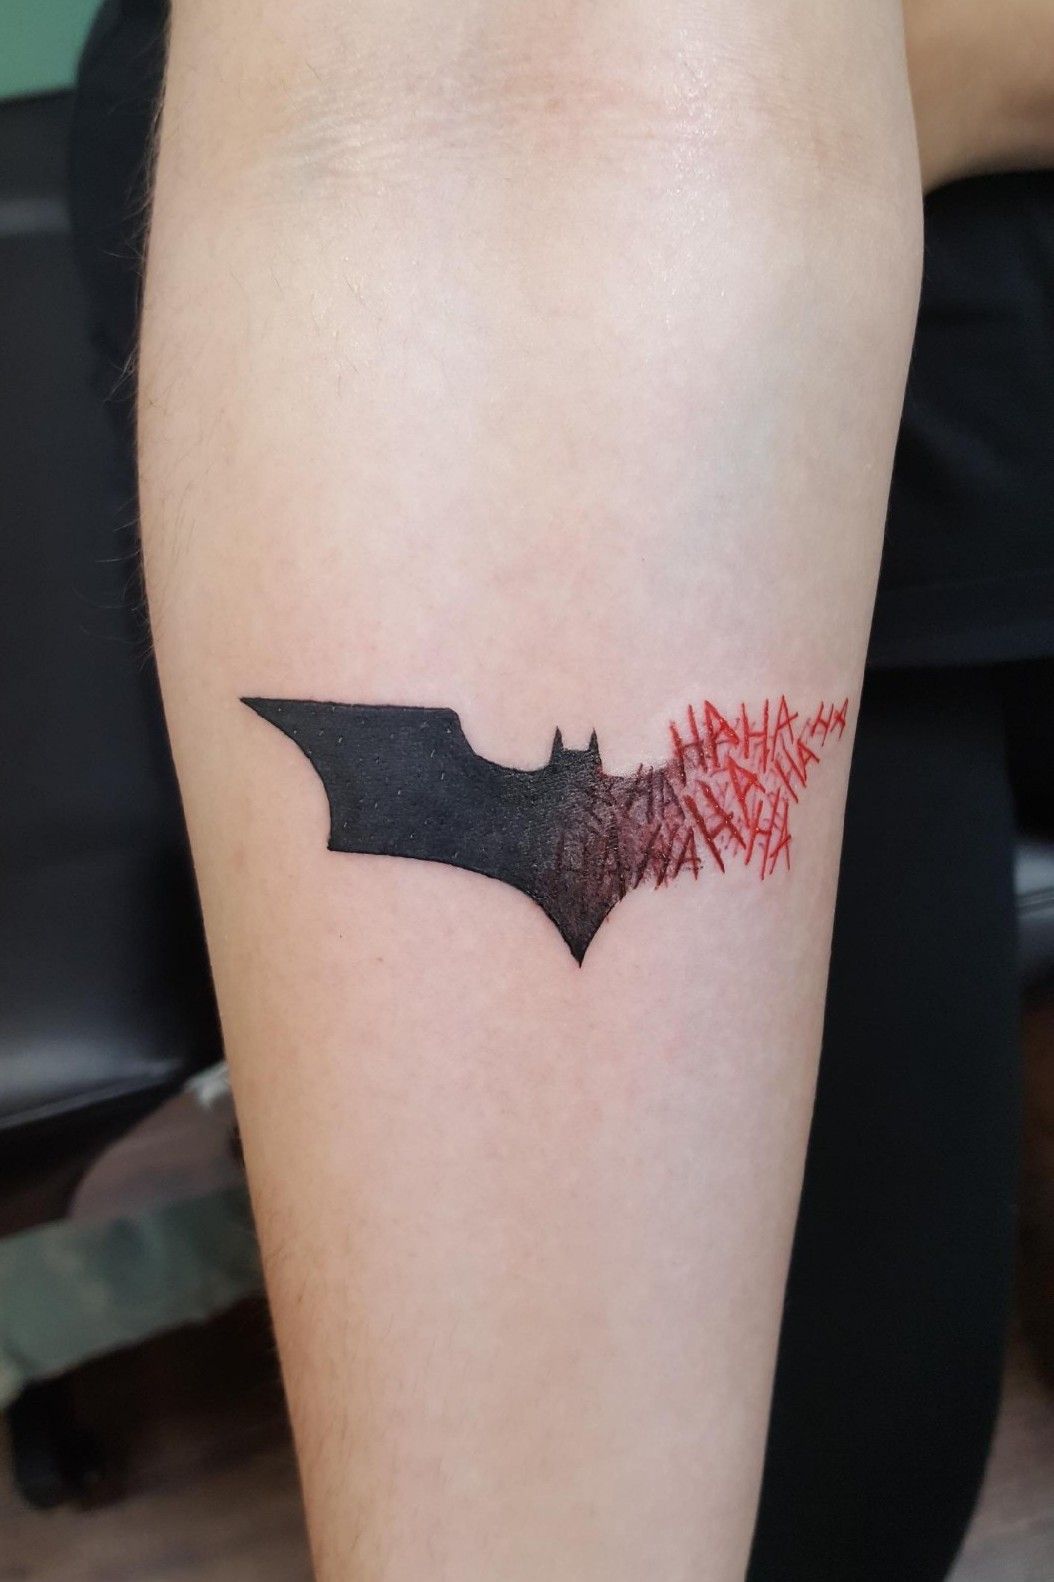 Batman and The Joker on Leg Tattoo Idea